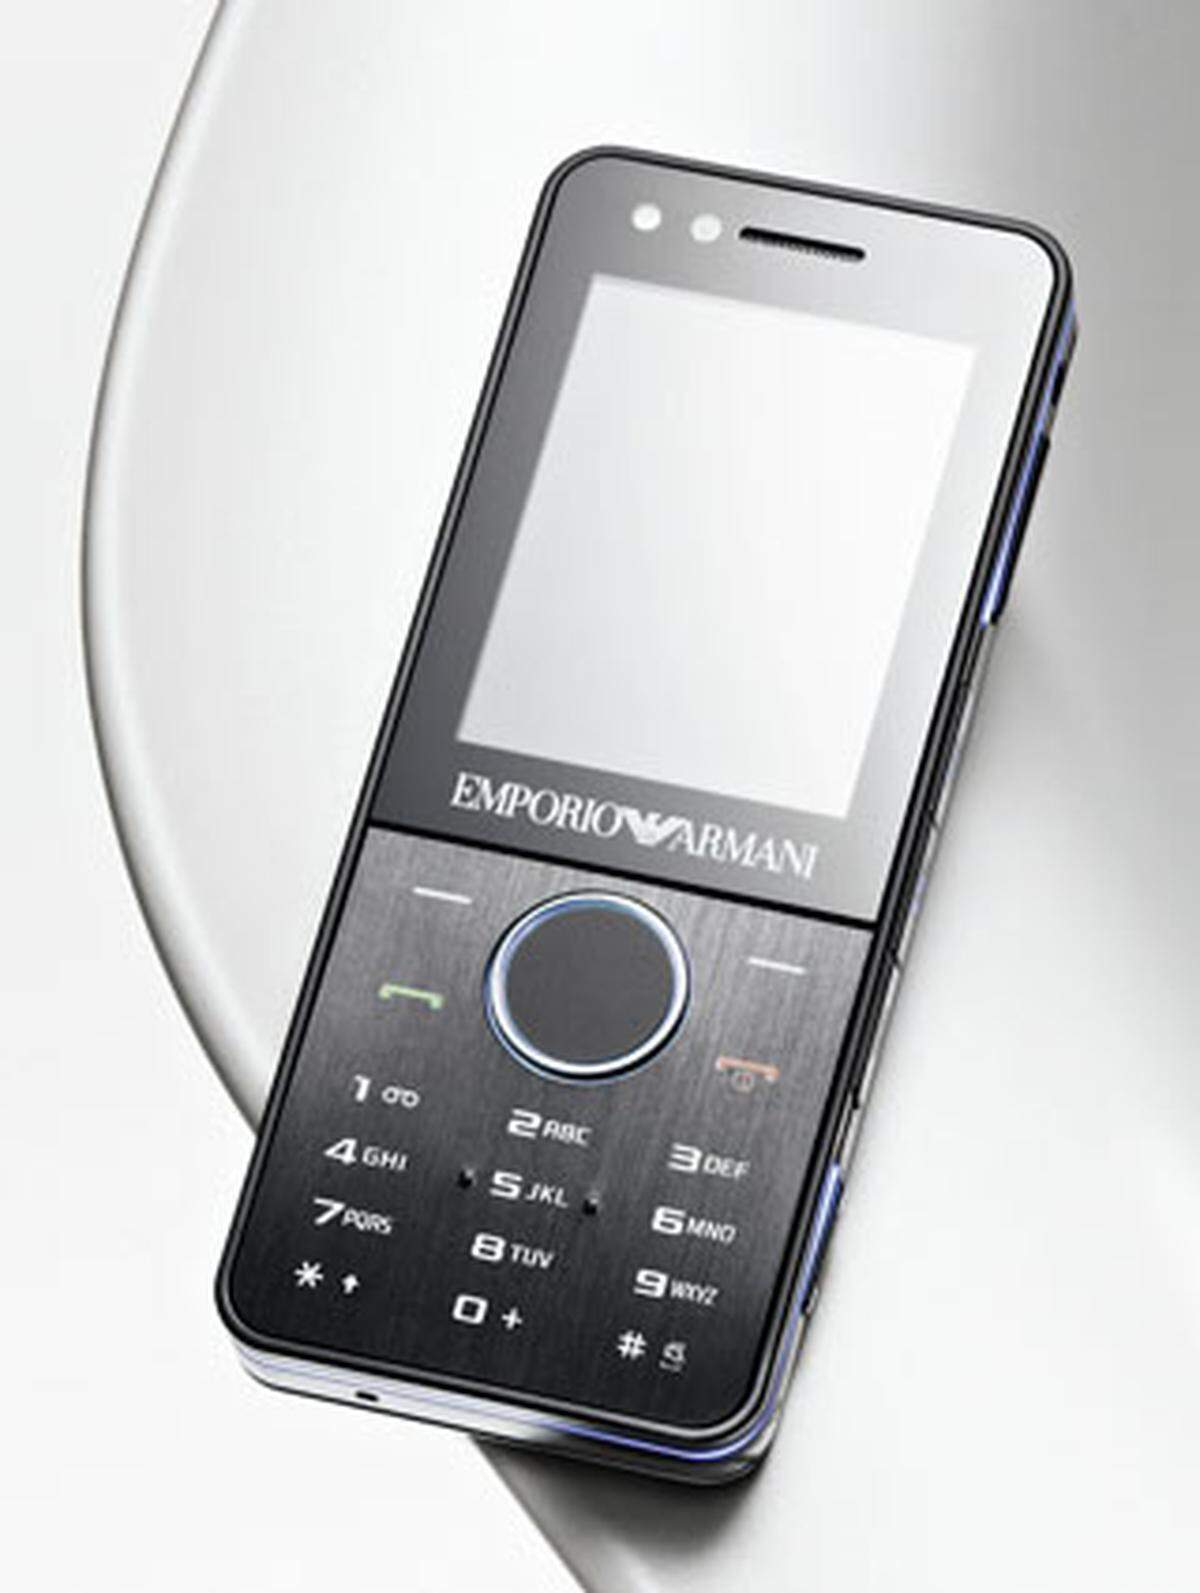 Mit seinen Lichteffekten an der Umrandung zieht das Samsung M7500 im Emporio-Armani-Design alle Blicke auf sich. Neben einer Kamera mit echtem Autofokus wurde auch ein hochwertiger Radioempfänger mit RDS-Anzeige ins Gerät eingebaut. Für einen schnellen Internetzugang sorgt HSDPA 3.6. Zusatz-feature für Audioliebhaber: die integrierte Musikerkennungsfunktion. Rund 180 Euro. www.samsung.at